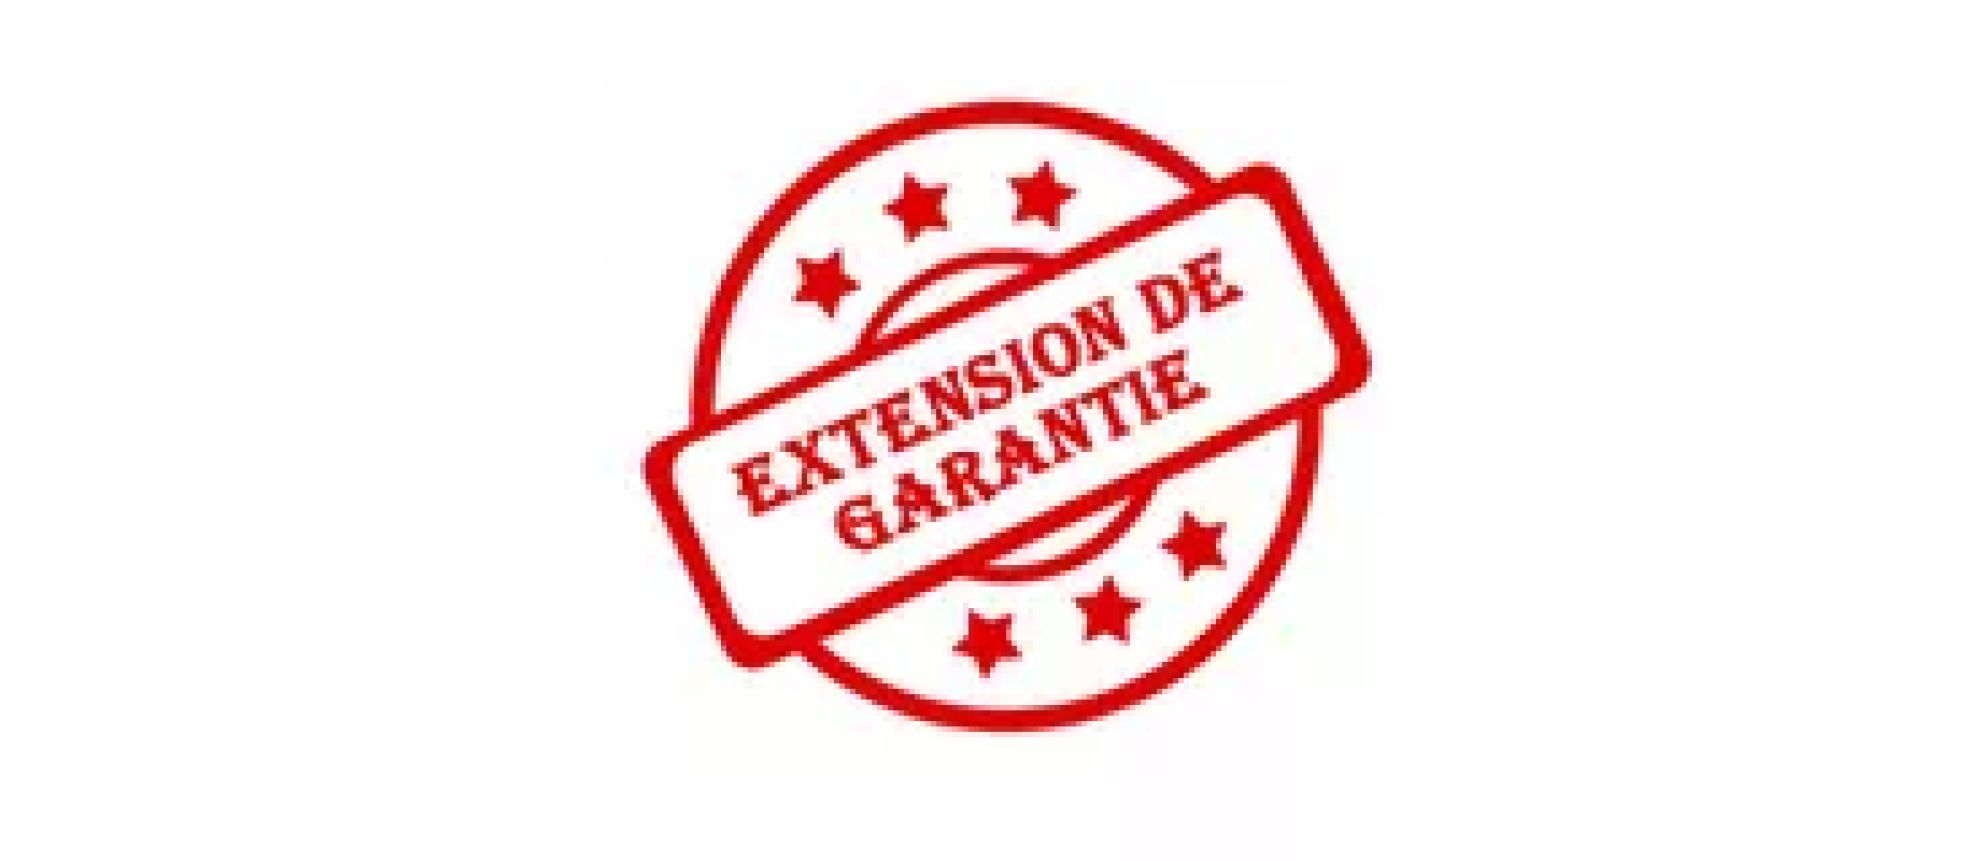 Extensions de garantie - hello RSE